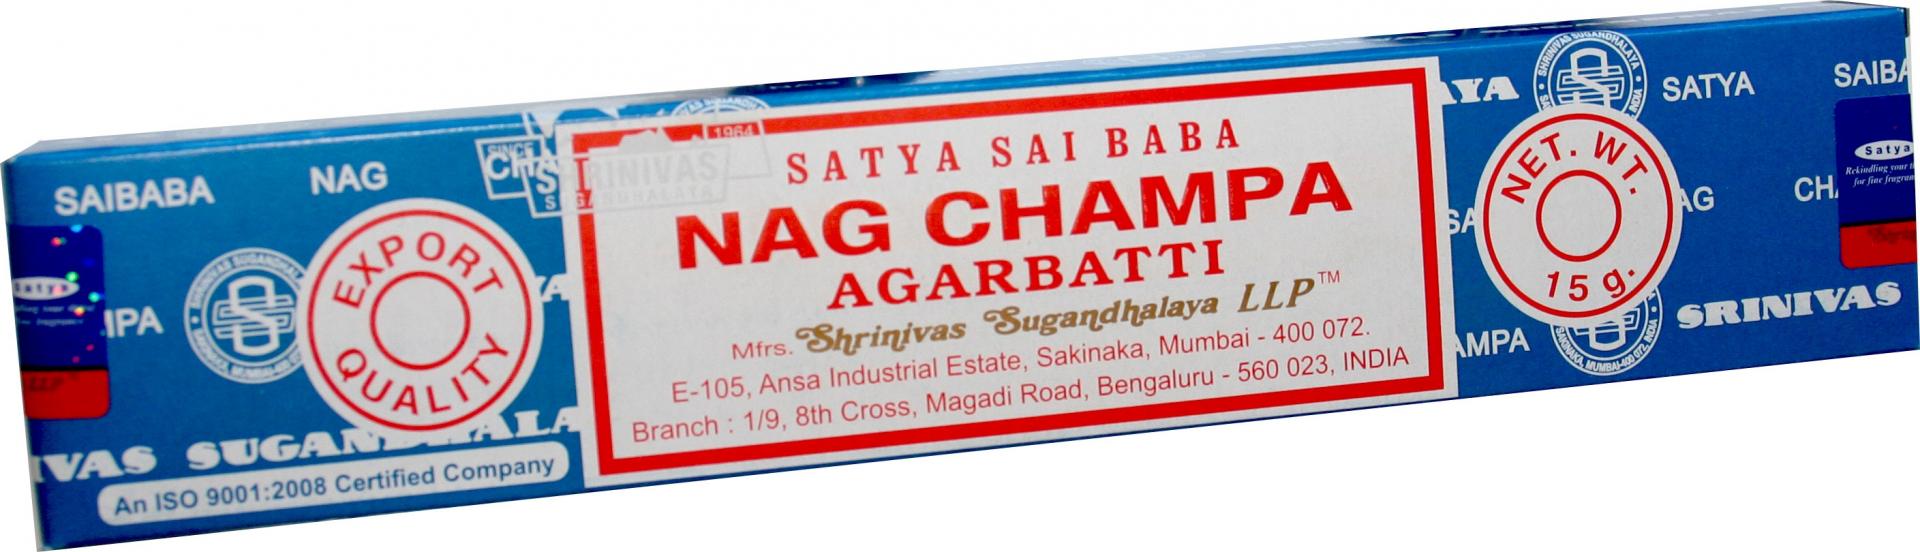 Incienso Satya 15 gr Nag Champa